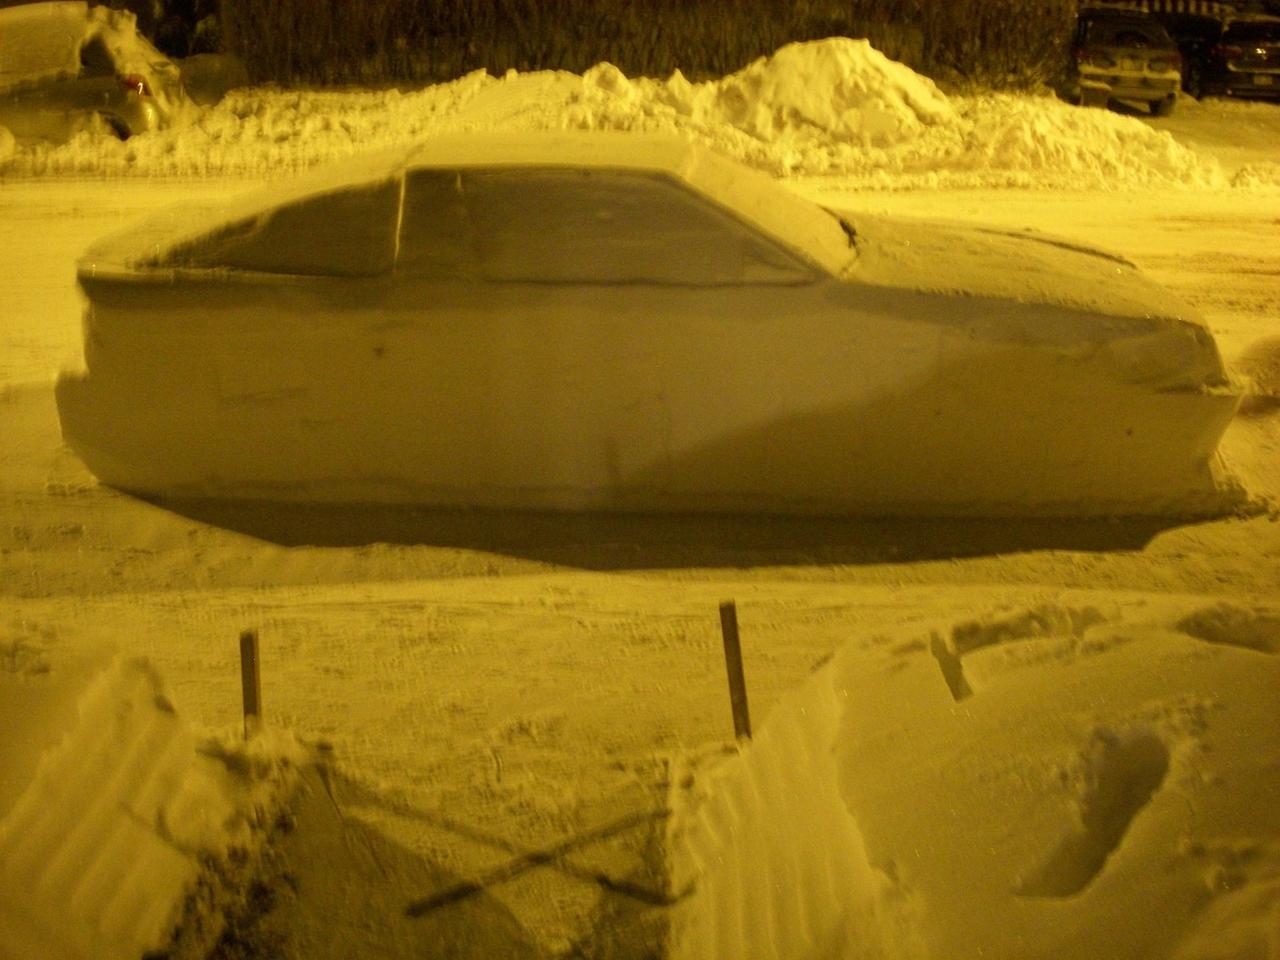 Вот как я развел полицейских неправильной парковкой «снегомобиля»